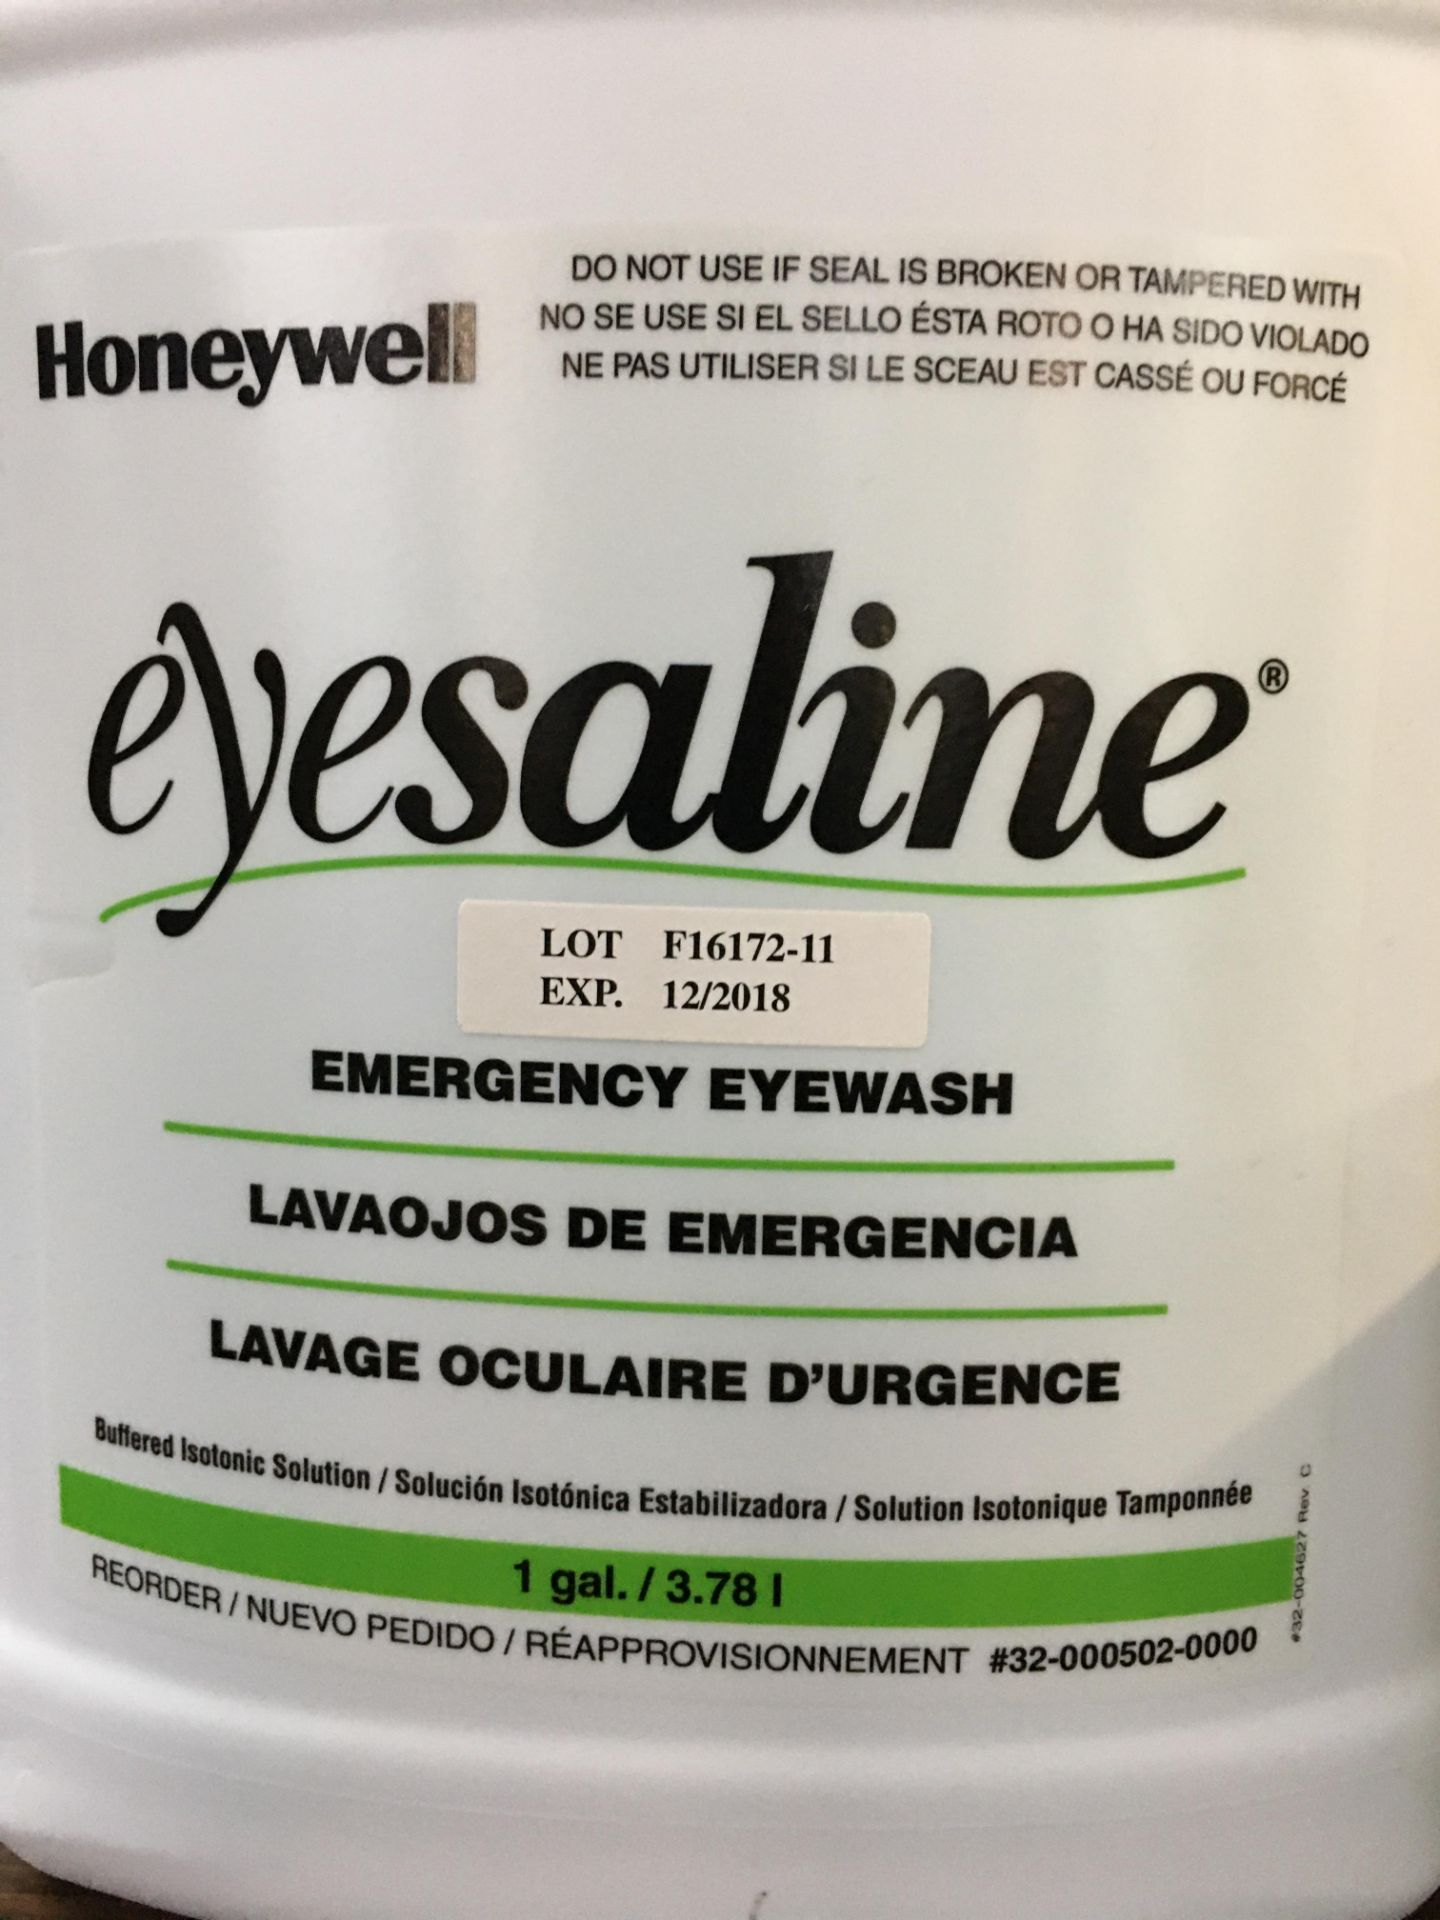 Honeywell Eyesaline Emergency Eye Wash - Image 2 of 2